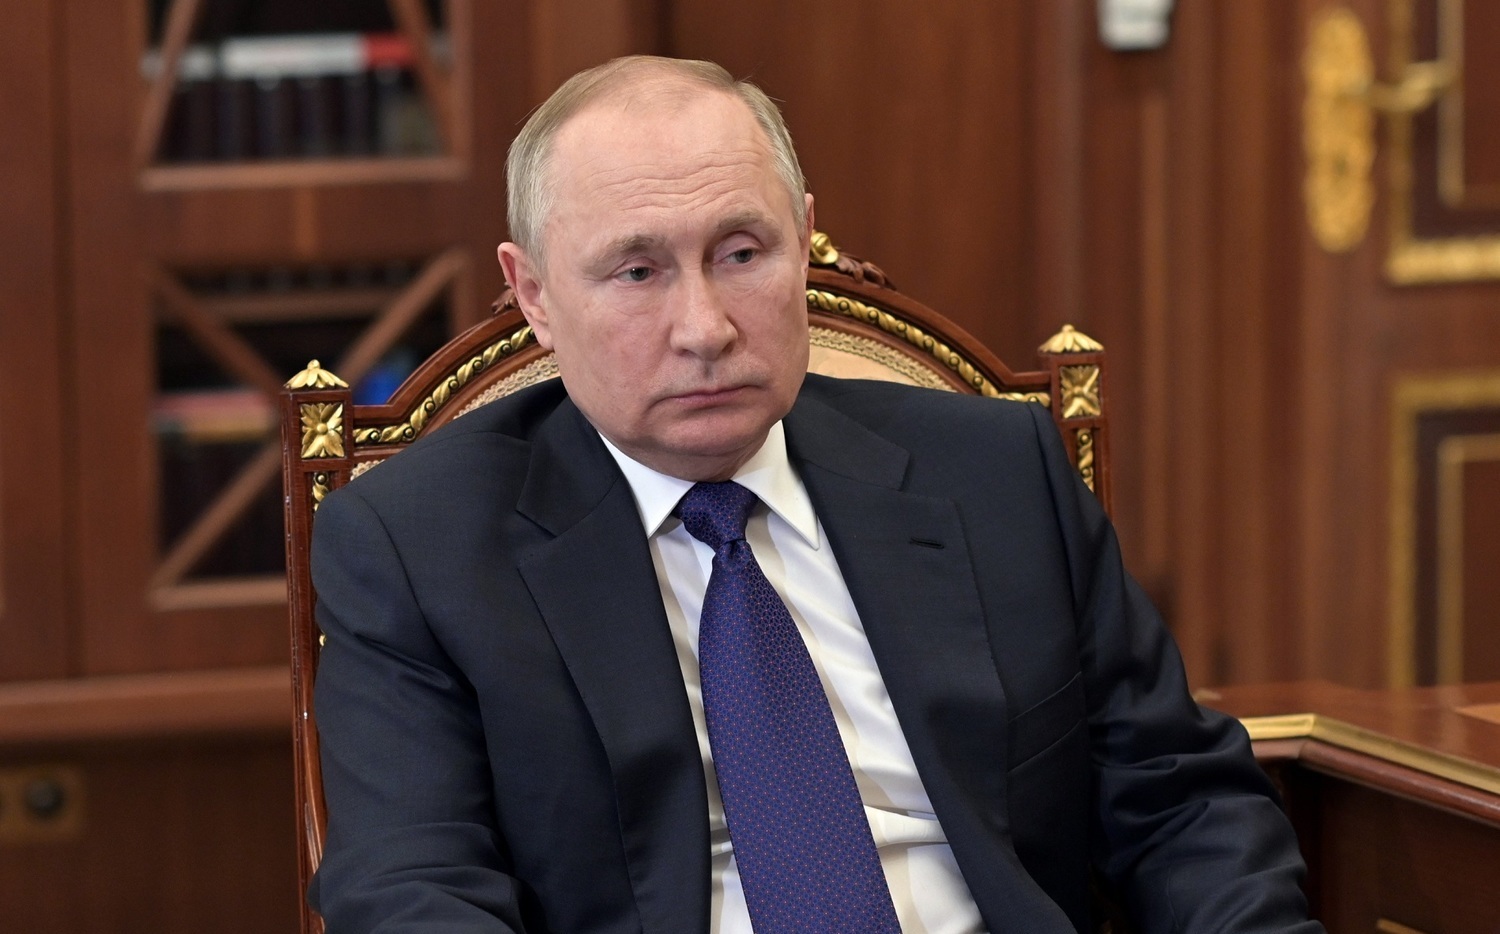 Путин Си риторически заявил: «Если я подумаю, я могу оккупировать Киев за две недели» Друзья: нет сроков для военных целей |  Международный |  Ньюталк Новости